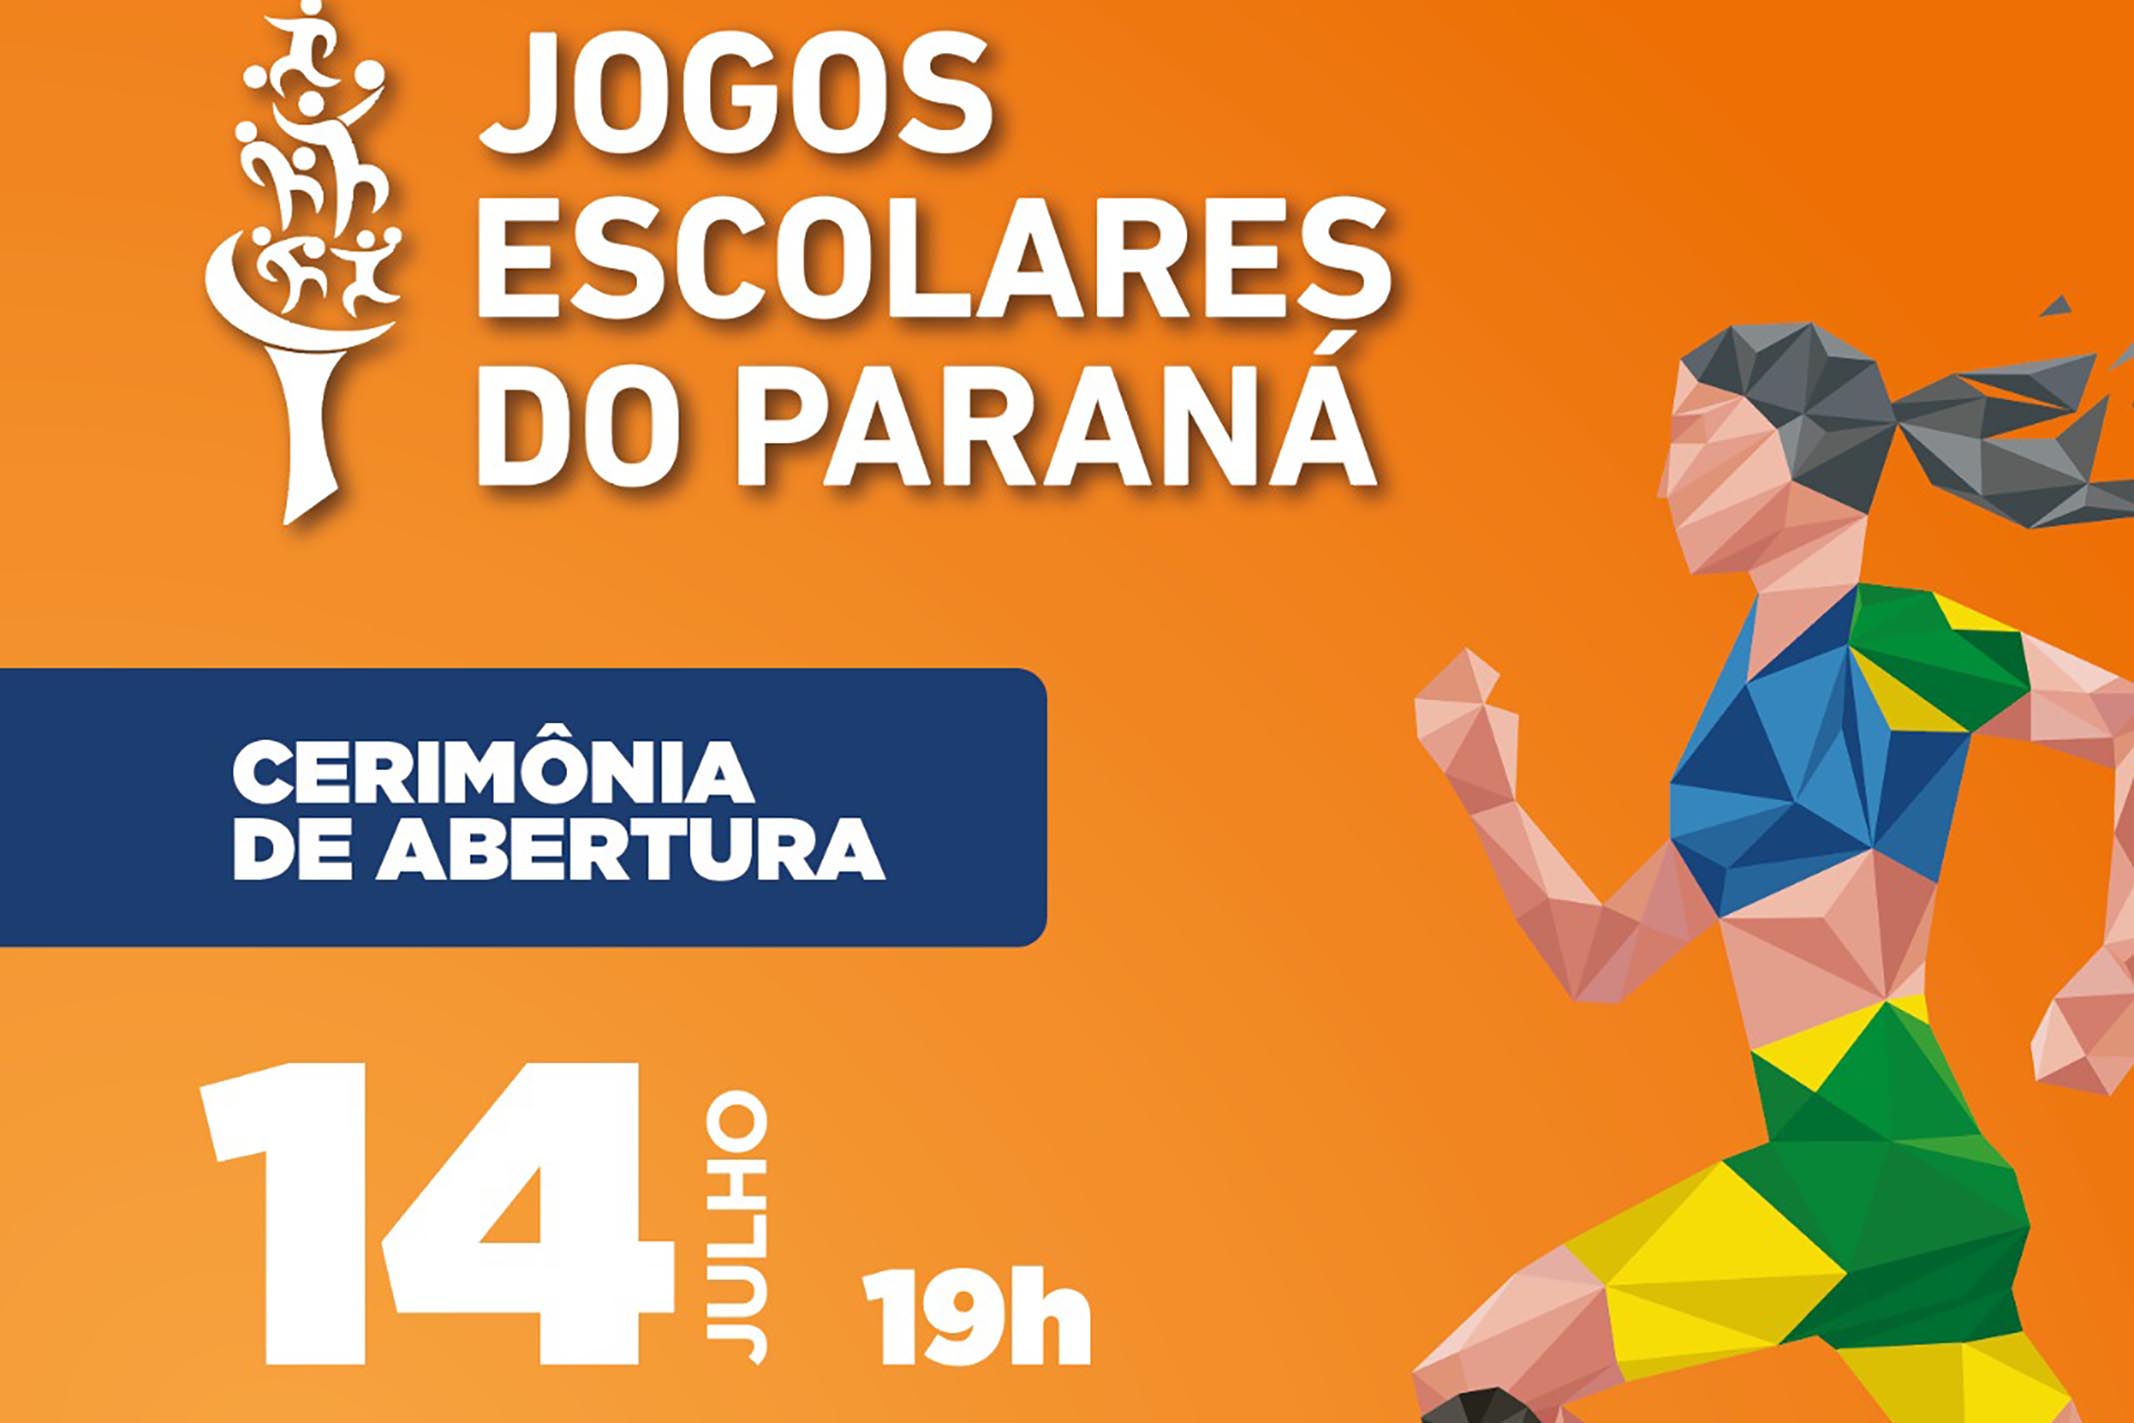 Jogos Escolares do Paraná reunirão mais de seis mil pessoas em Maringá